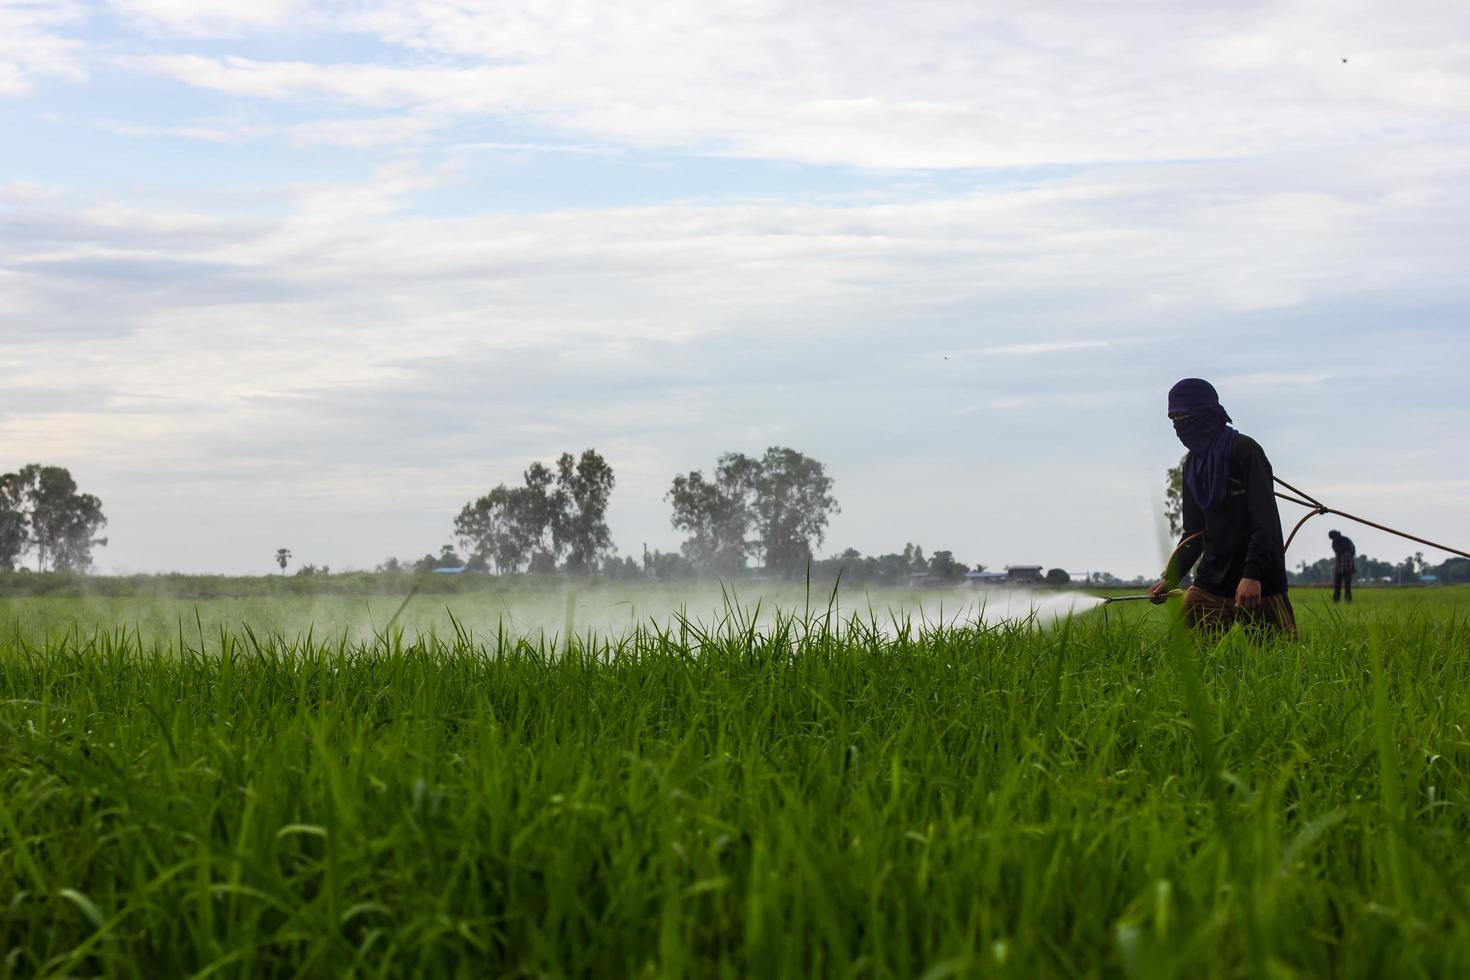 Farmers spraying rice fields. photo